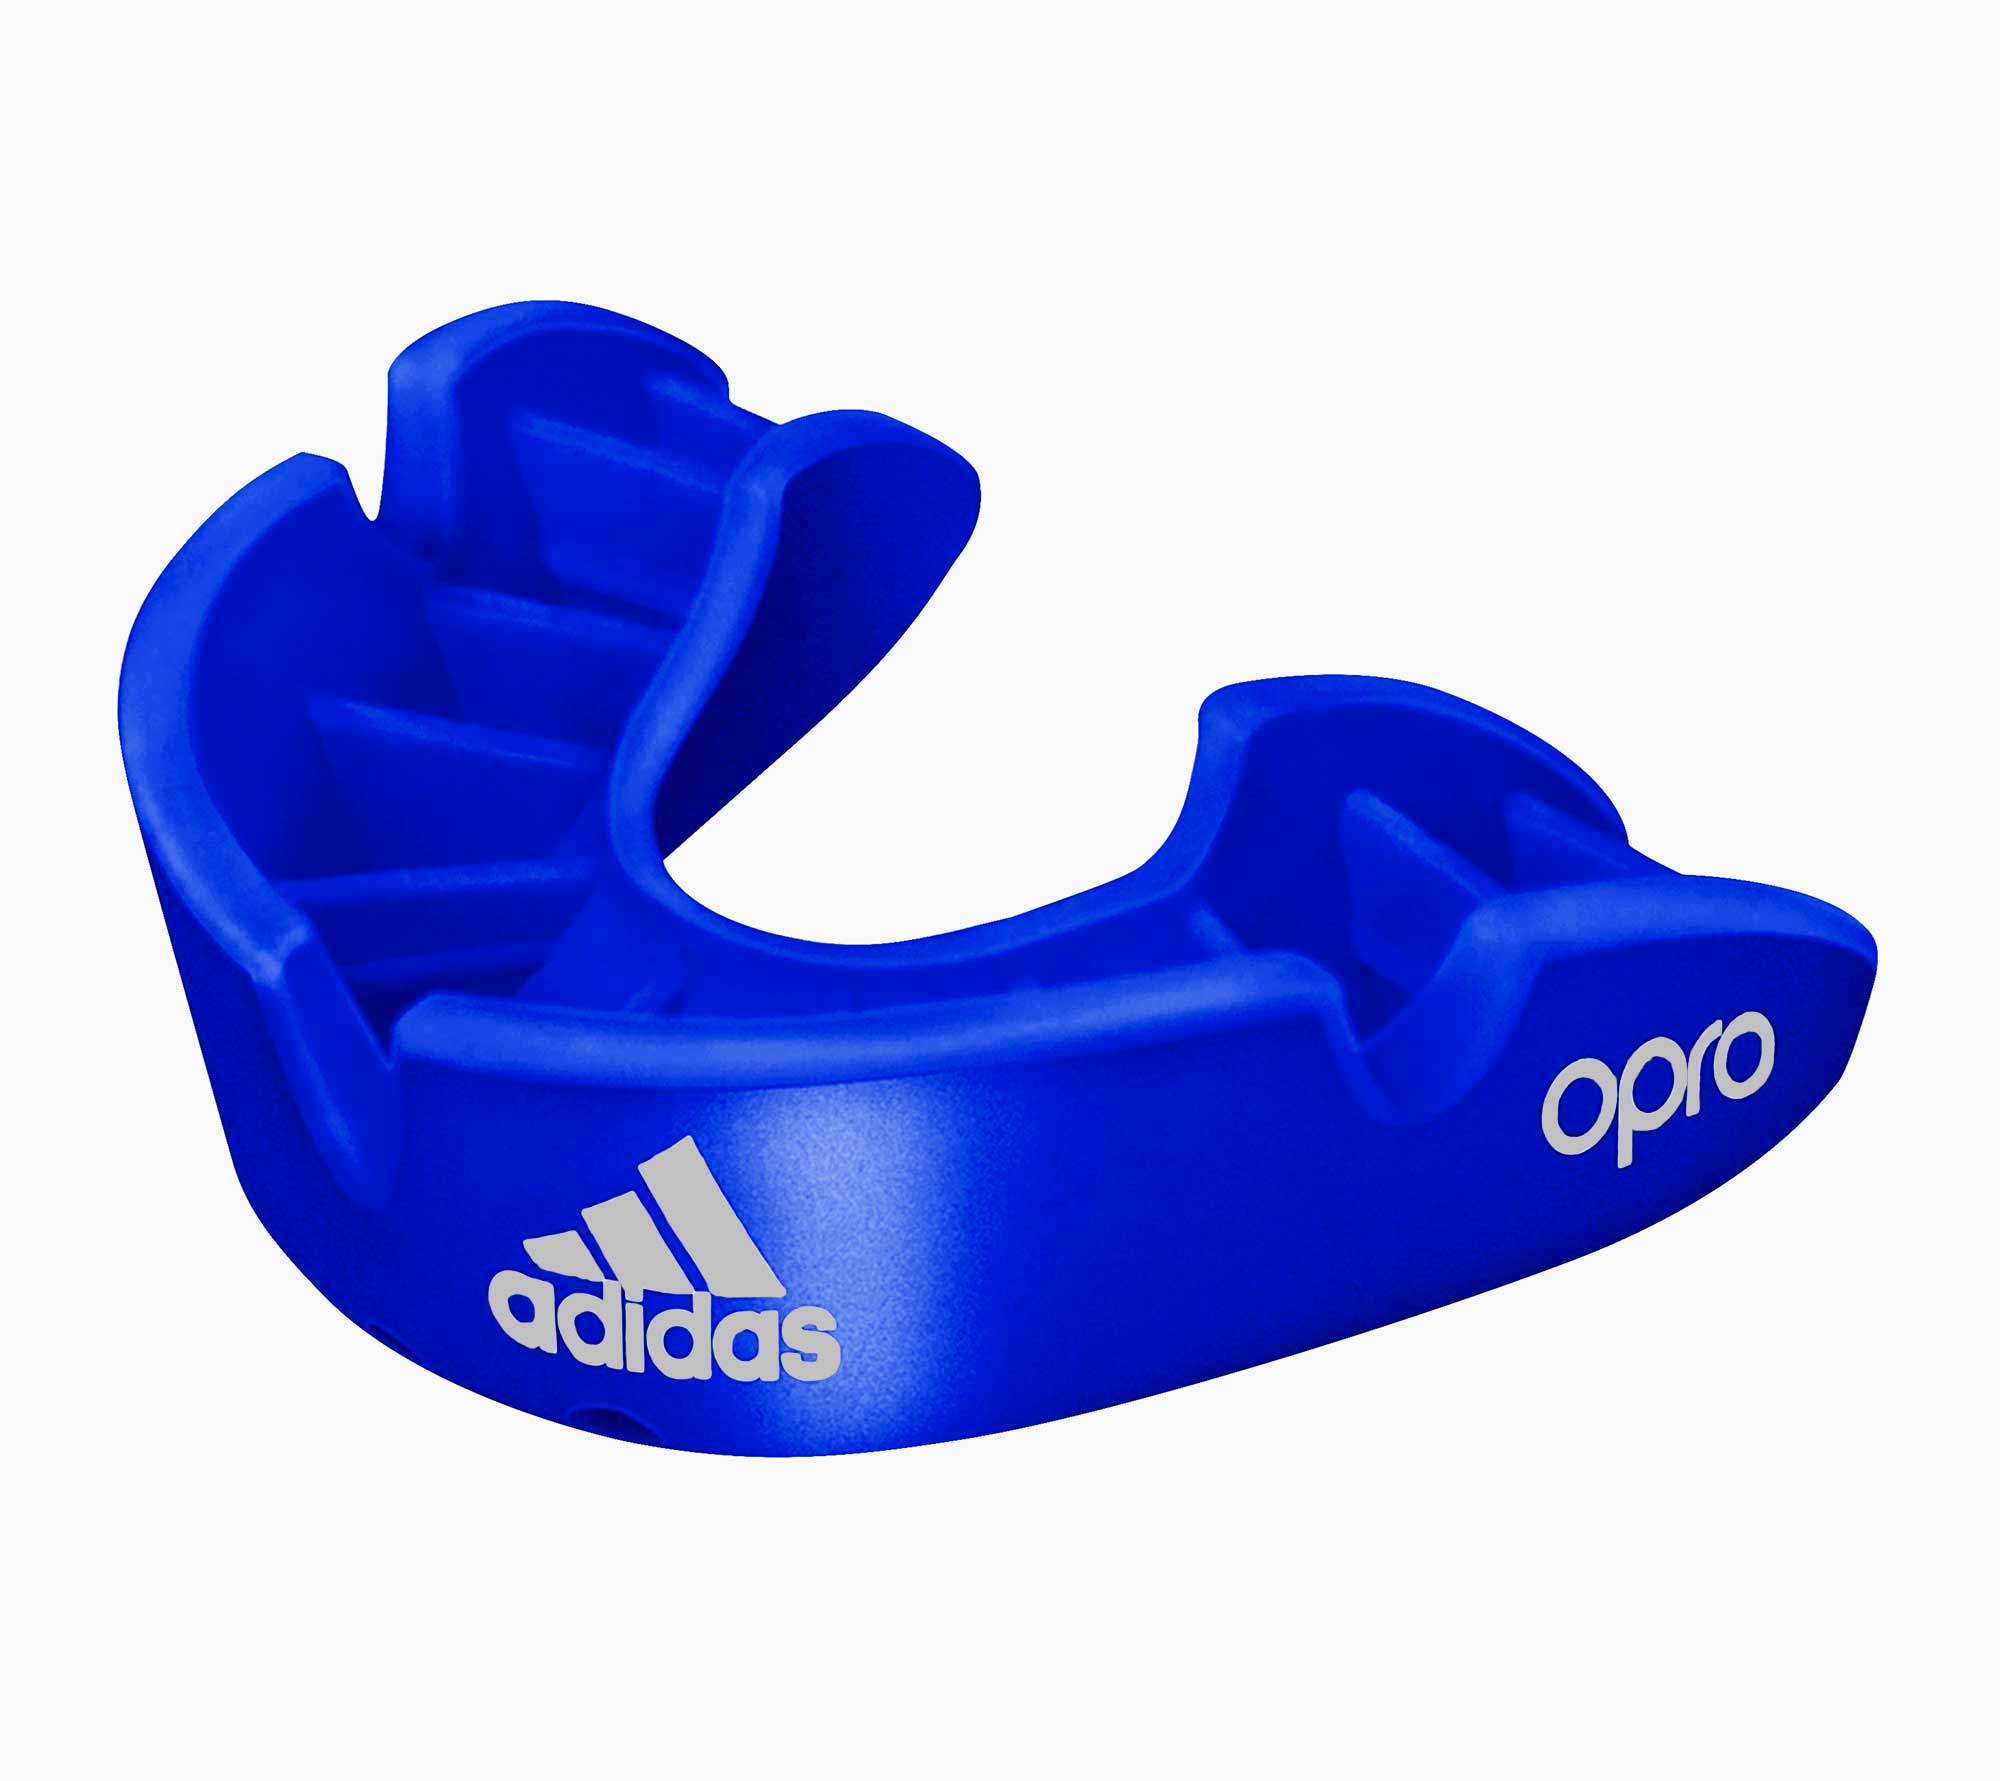 Купить Капа одночелюстная Adidas adiBP31 Opro Bronze Gen4 Self-Fit Mouthguard синяя,